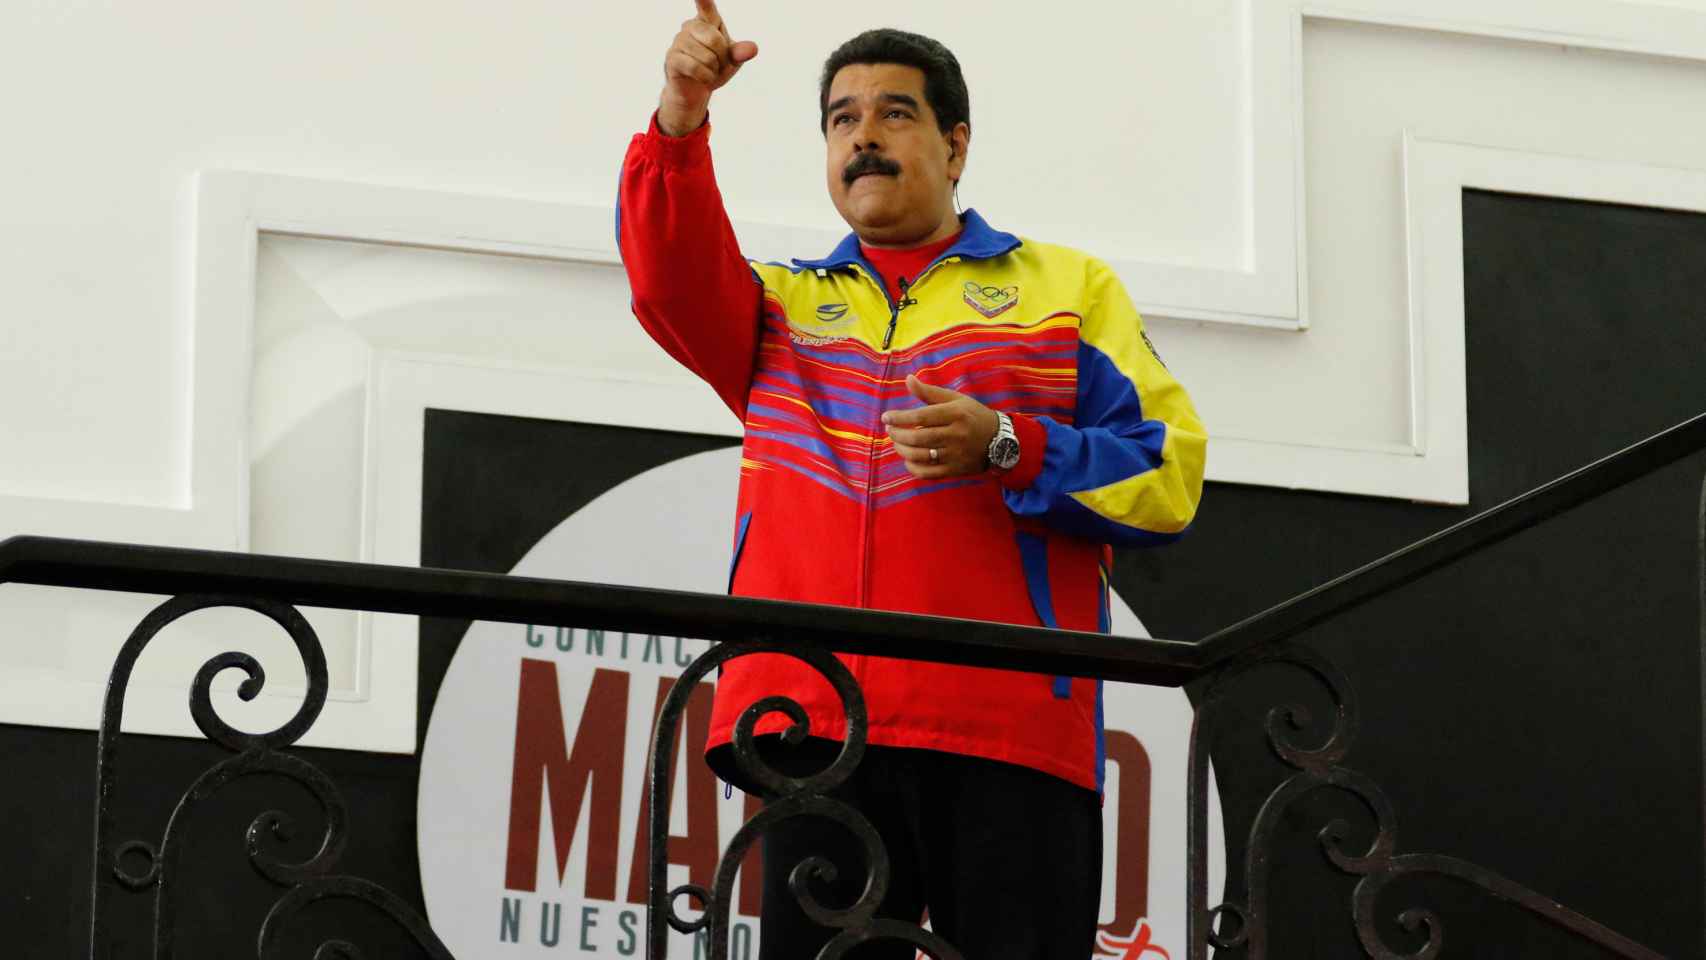 El presidente de Venezuela, Nicolás Maduro.